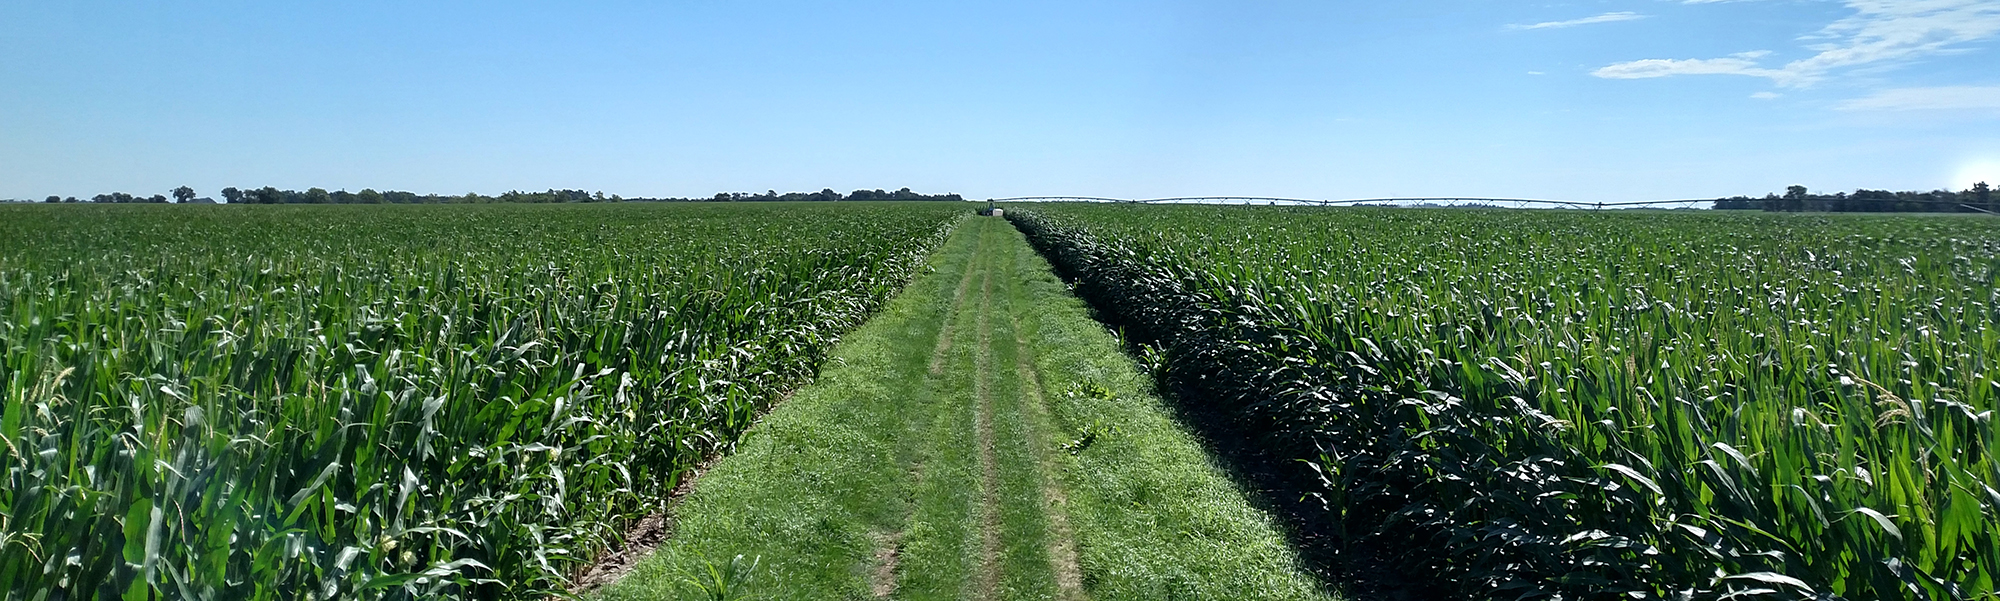 Corn field near silking